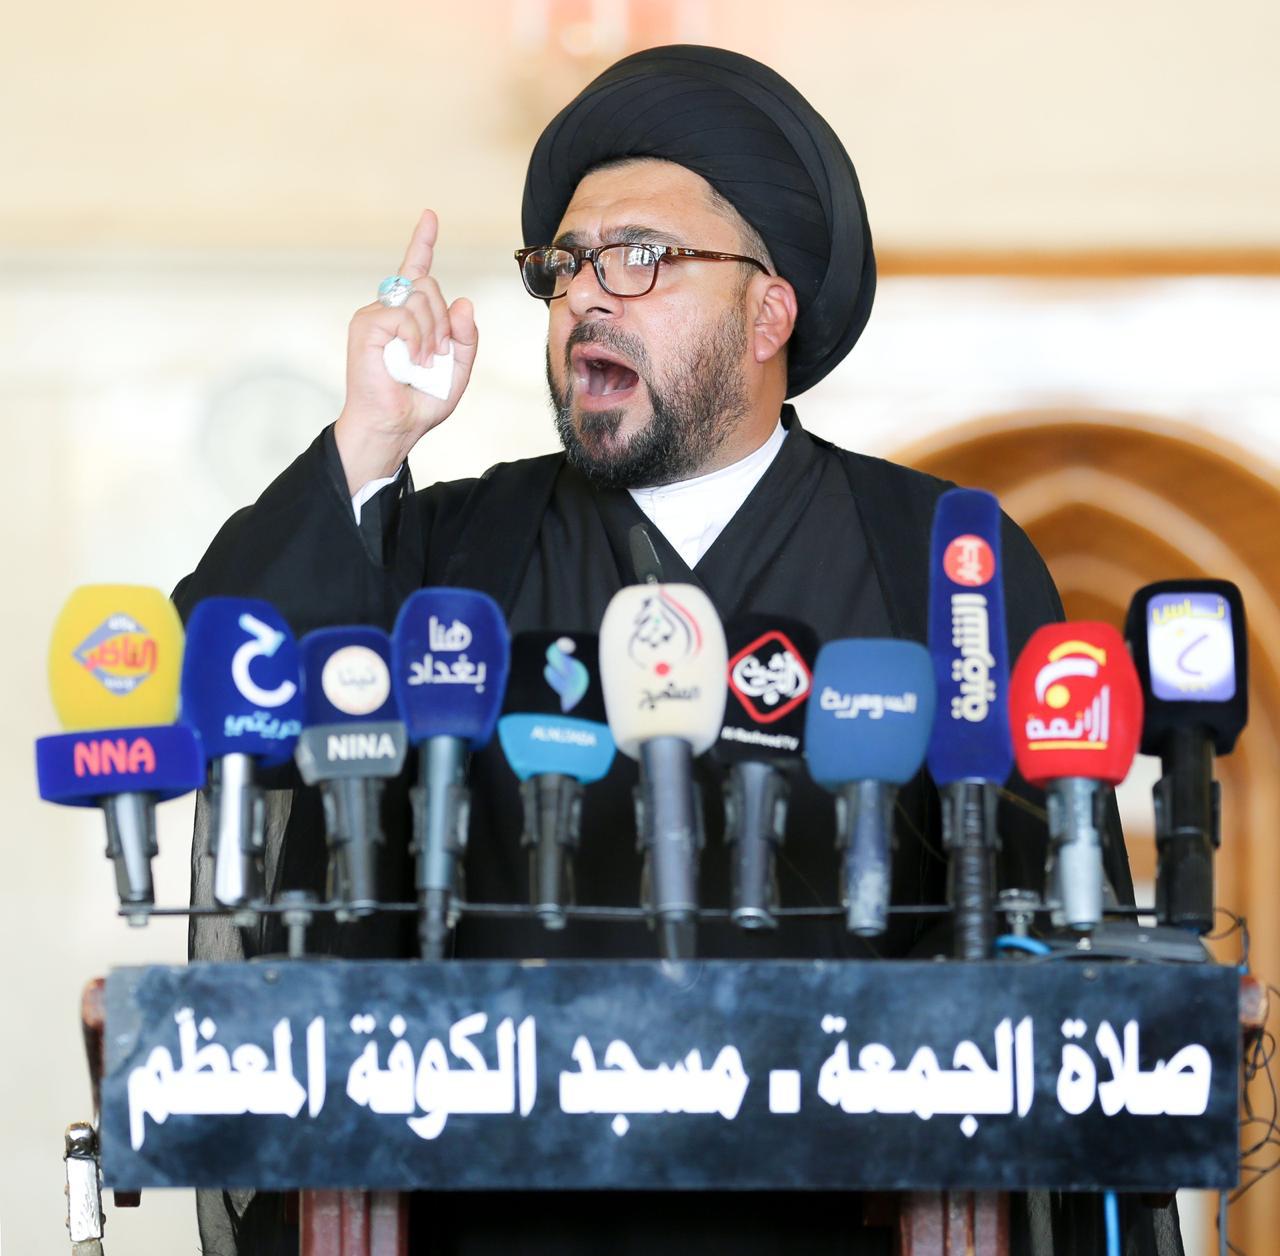 خطيب صدري يقول إن سحب الثقة من الحكومة العراقية "بيد الجماهير"